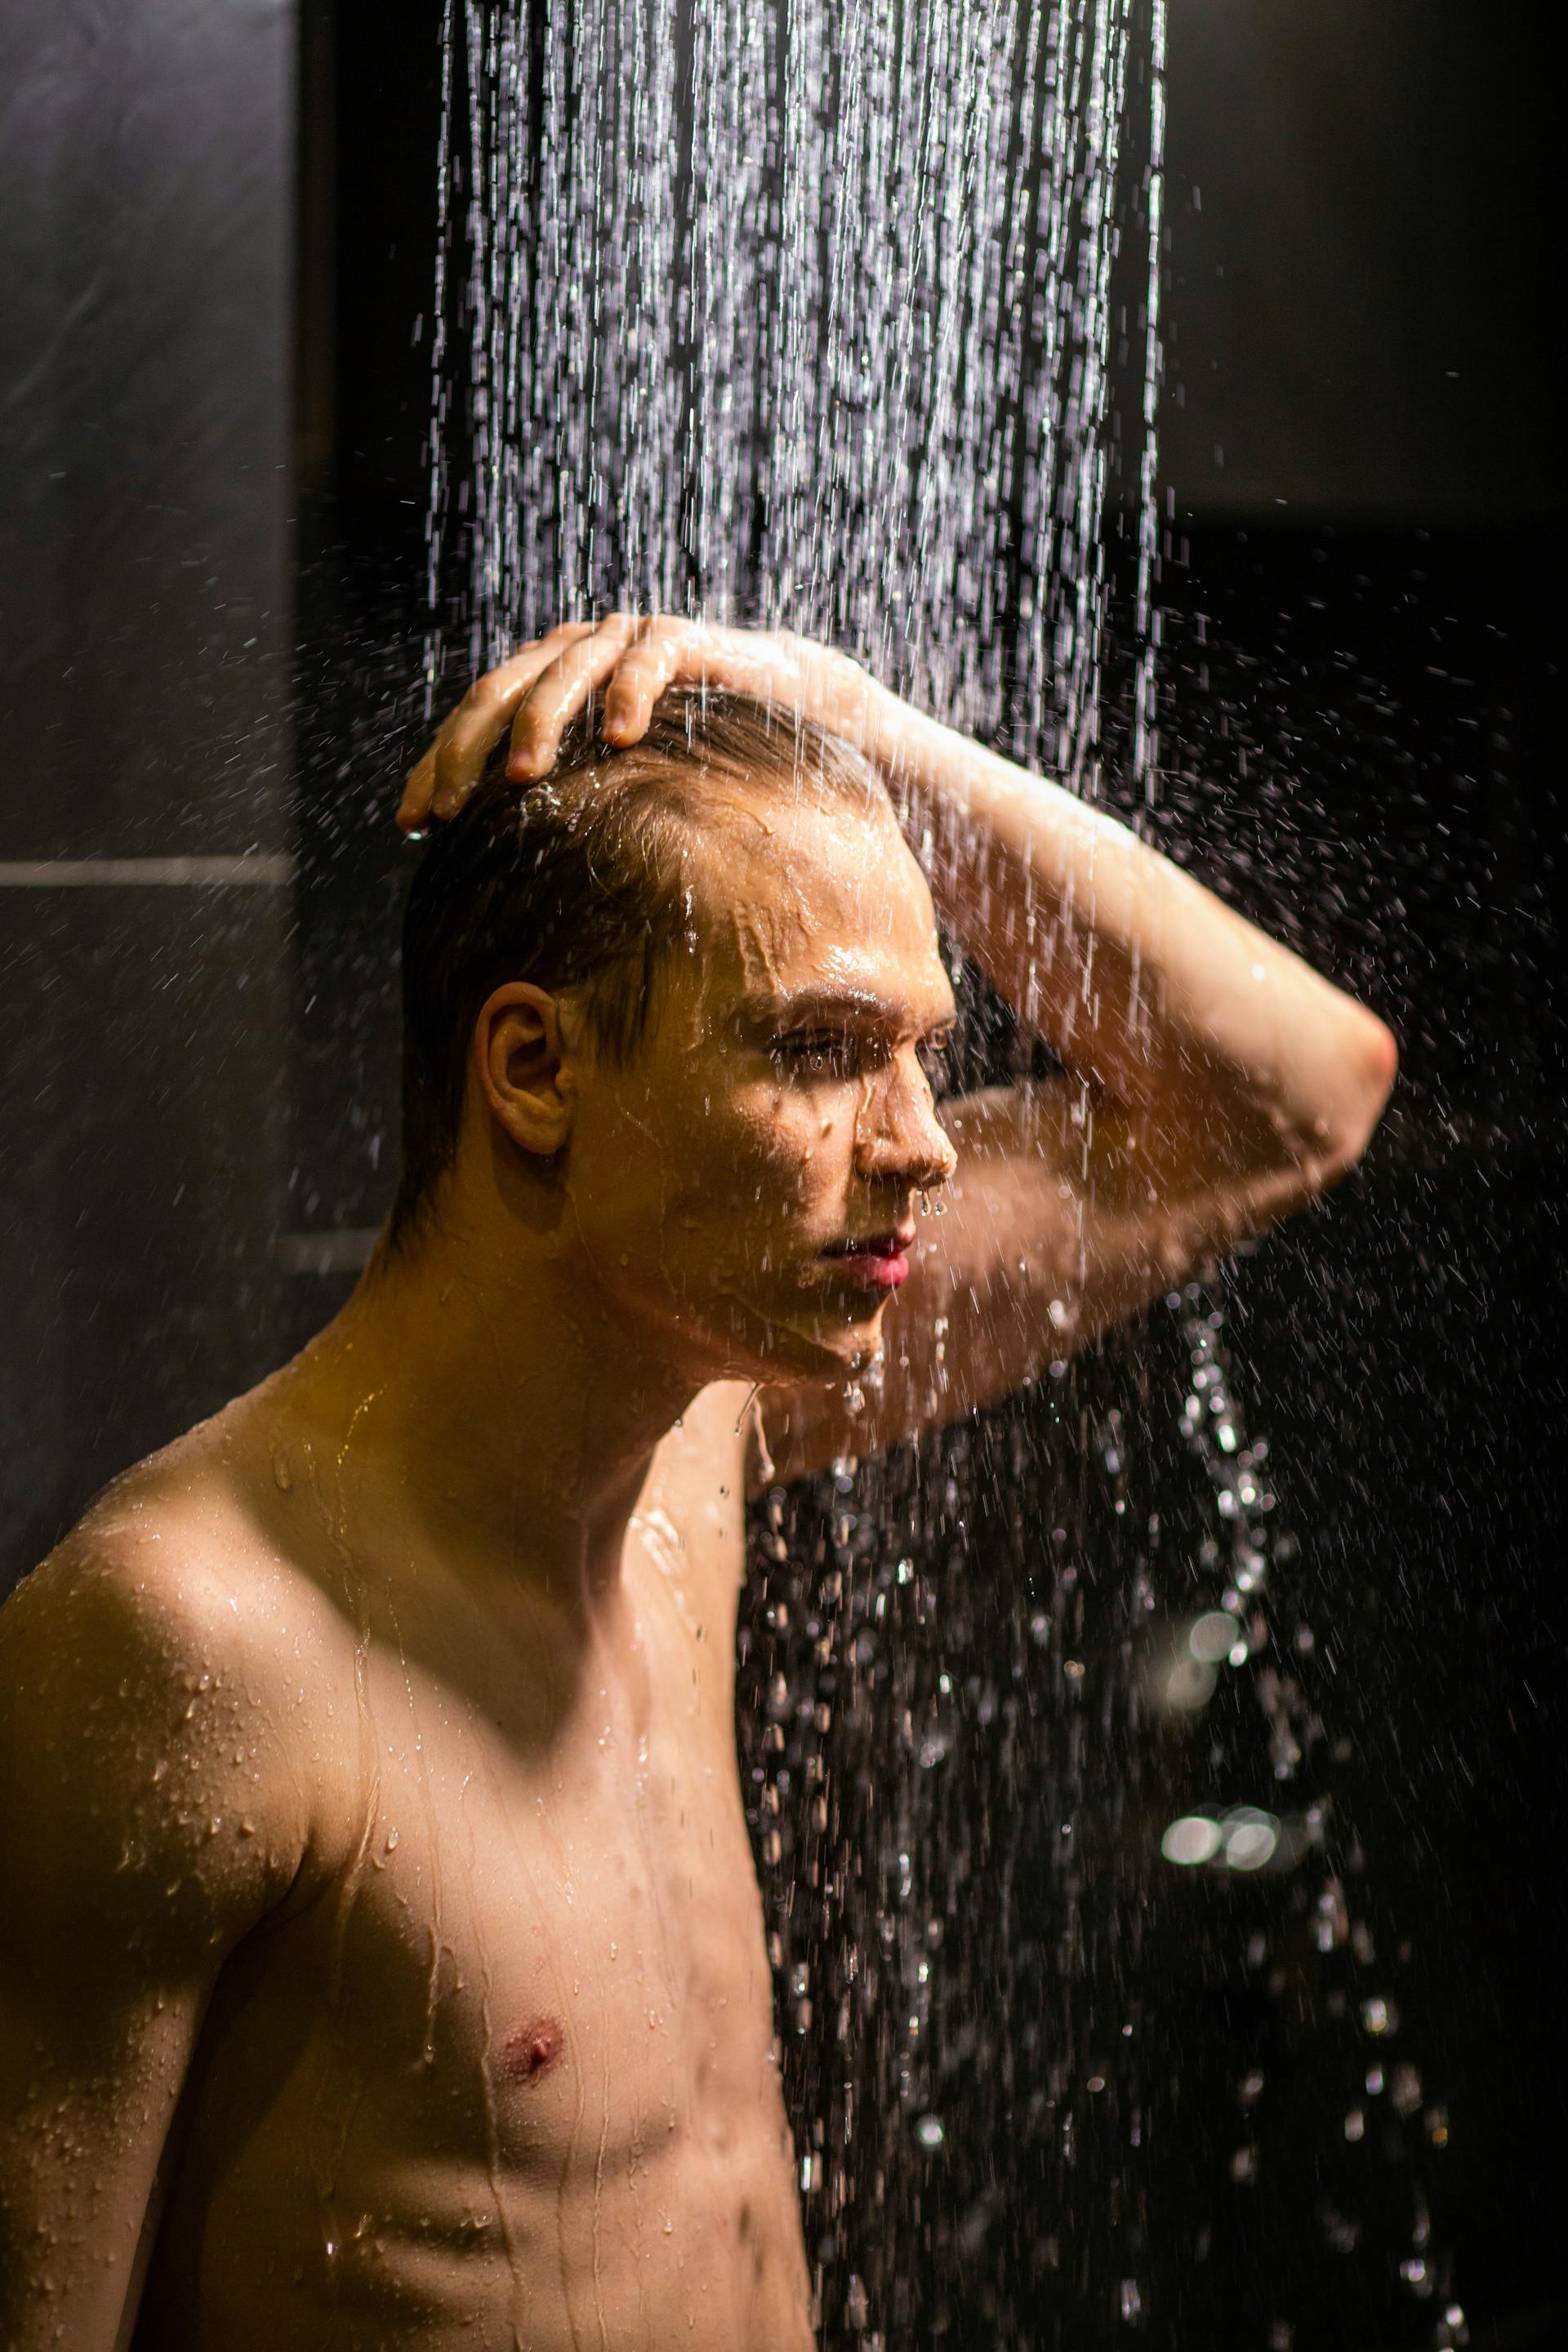 Un hombre tomando una ducha relajante | Fuente: Pexels